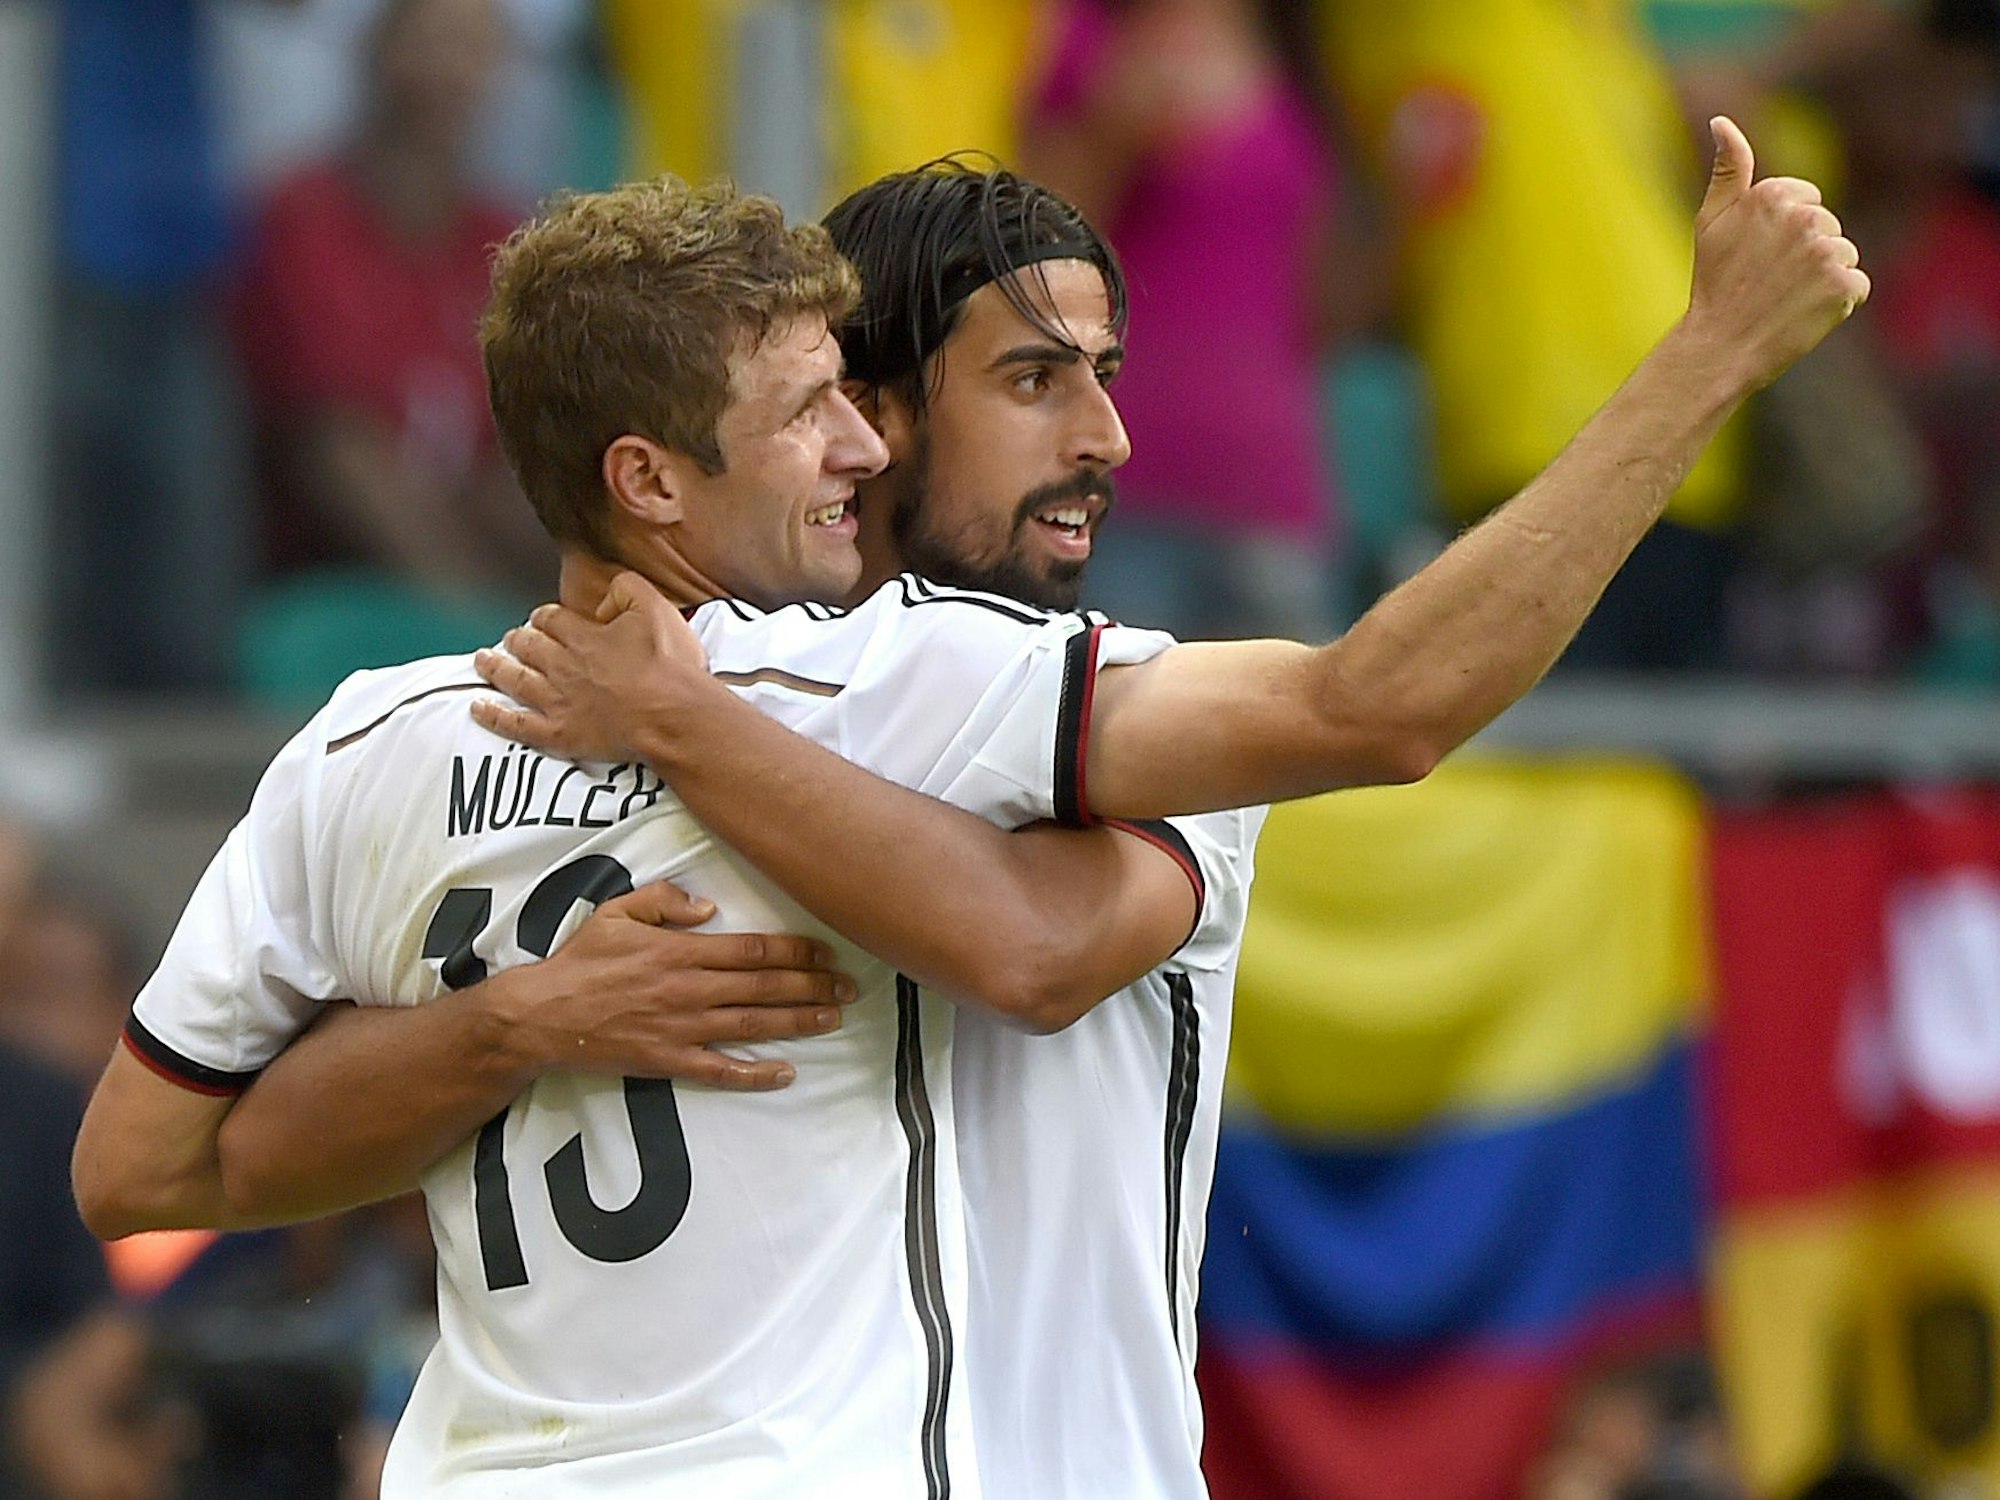 Thomas Müller und Sami Khedira in einer Umarmung während eines Länderspiels.